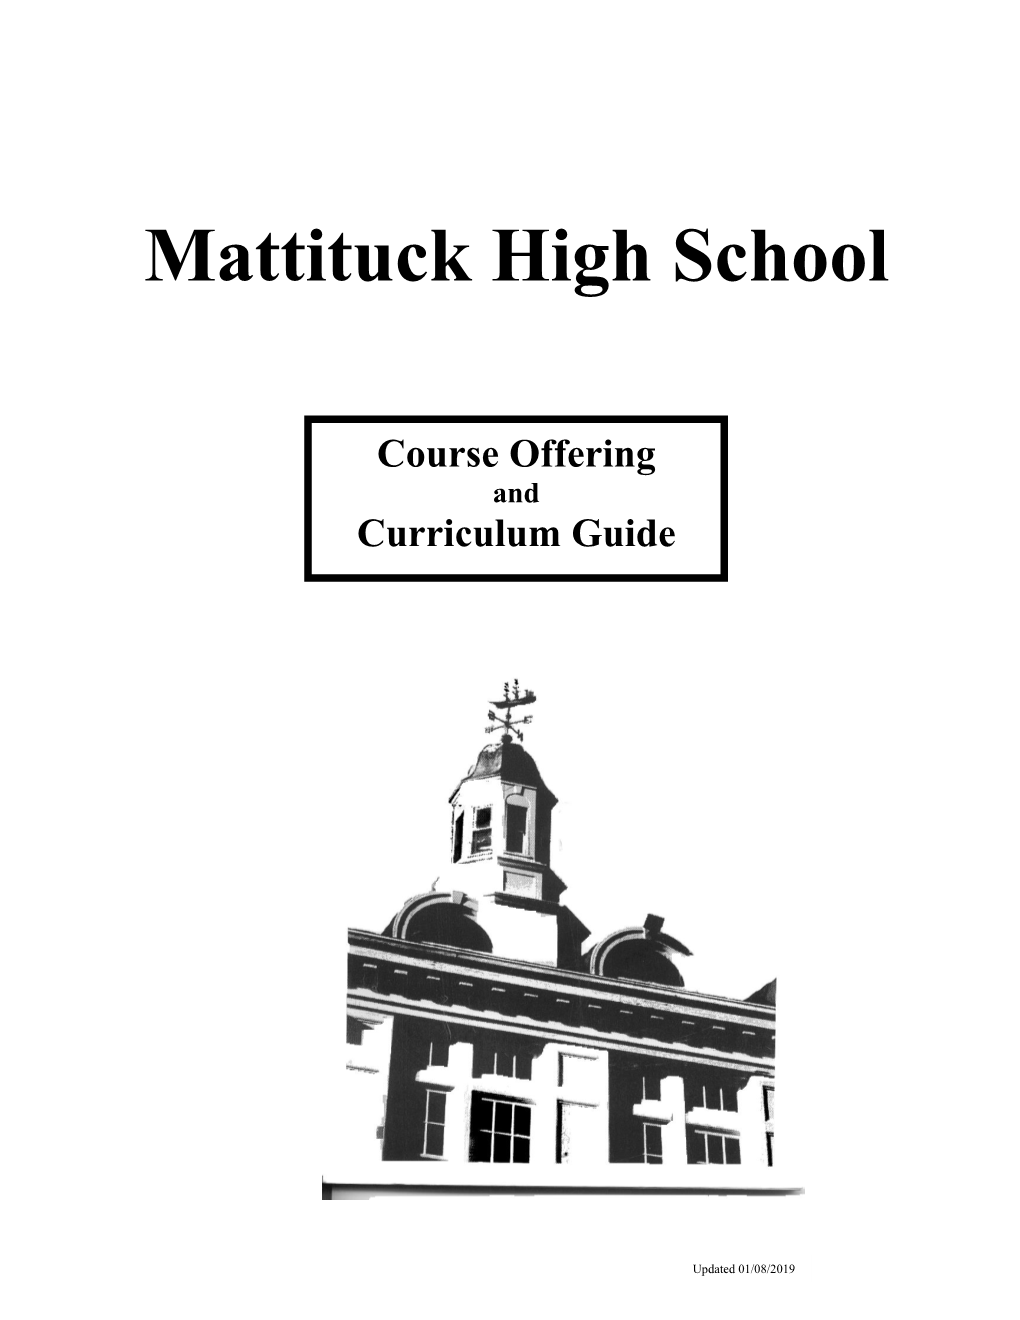 Mattituck High School